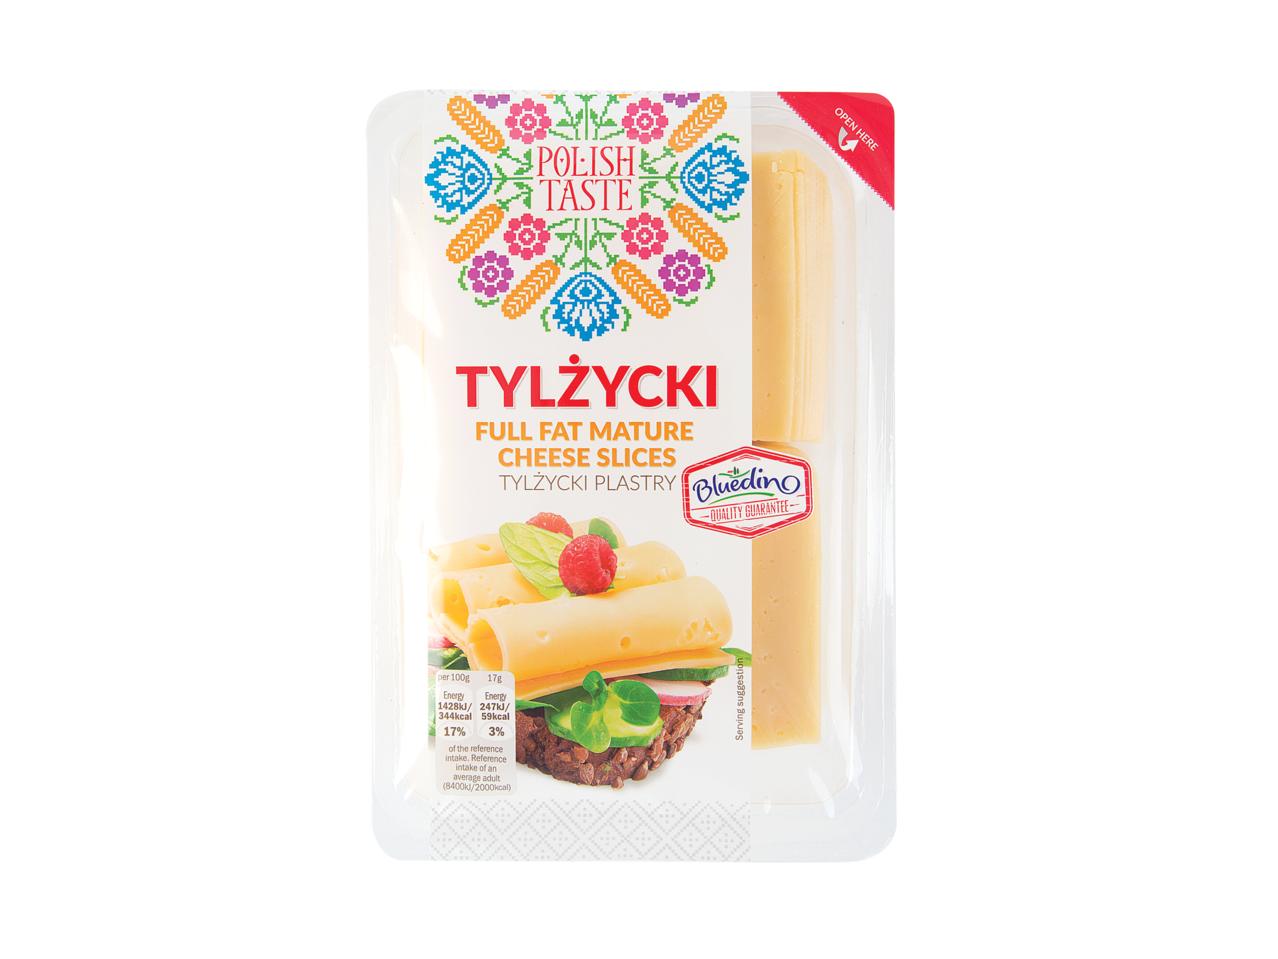 POLISH TASTE Mature Cheese Slices